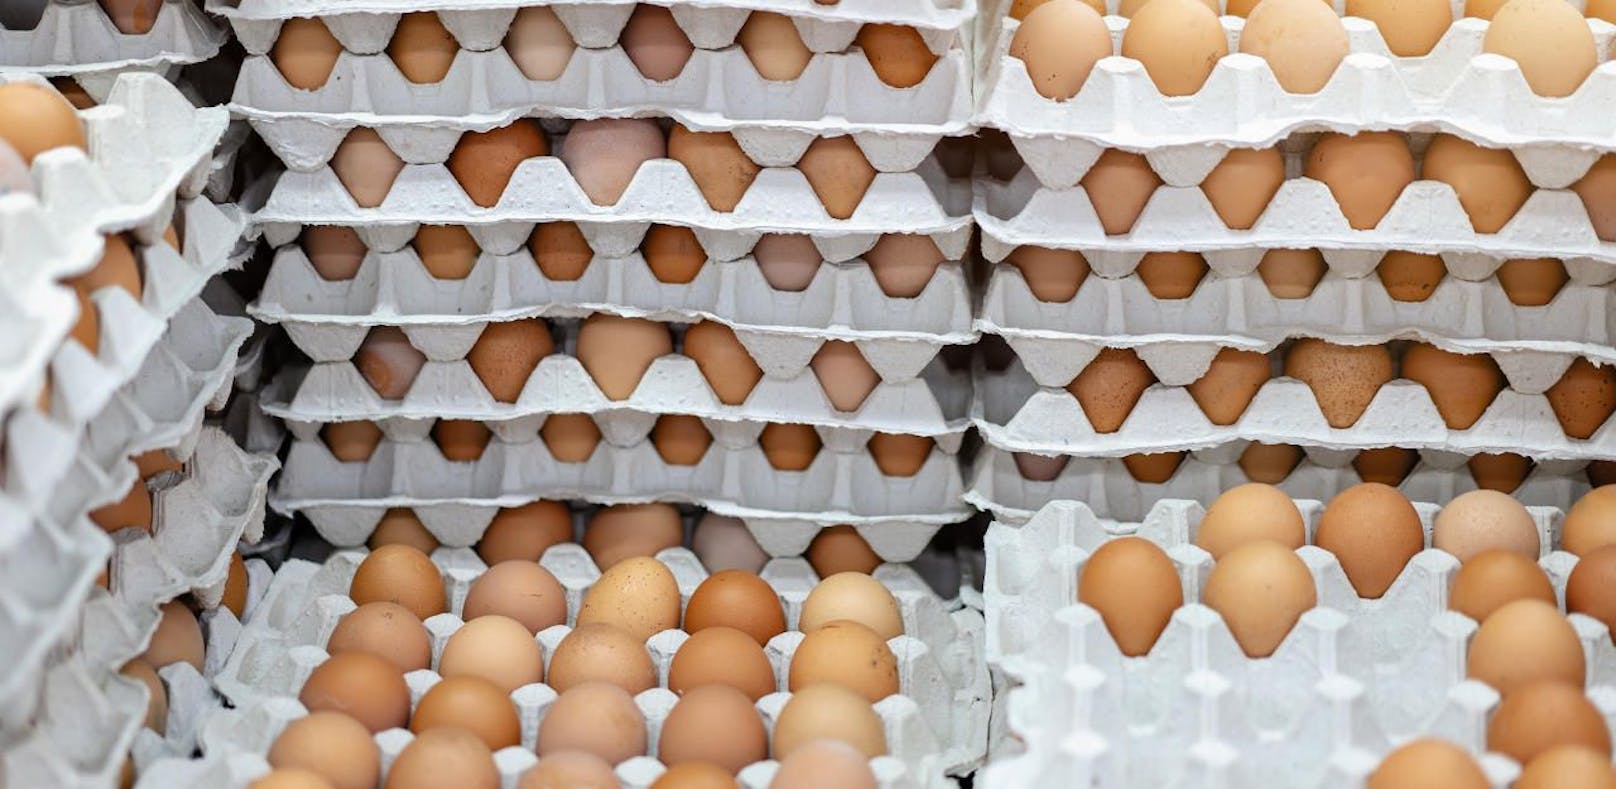 Ermittlungen gegen einen eierverarbeitenden Betrieb in NÖ